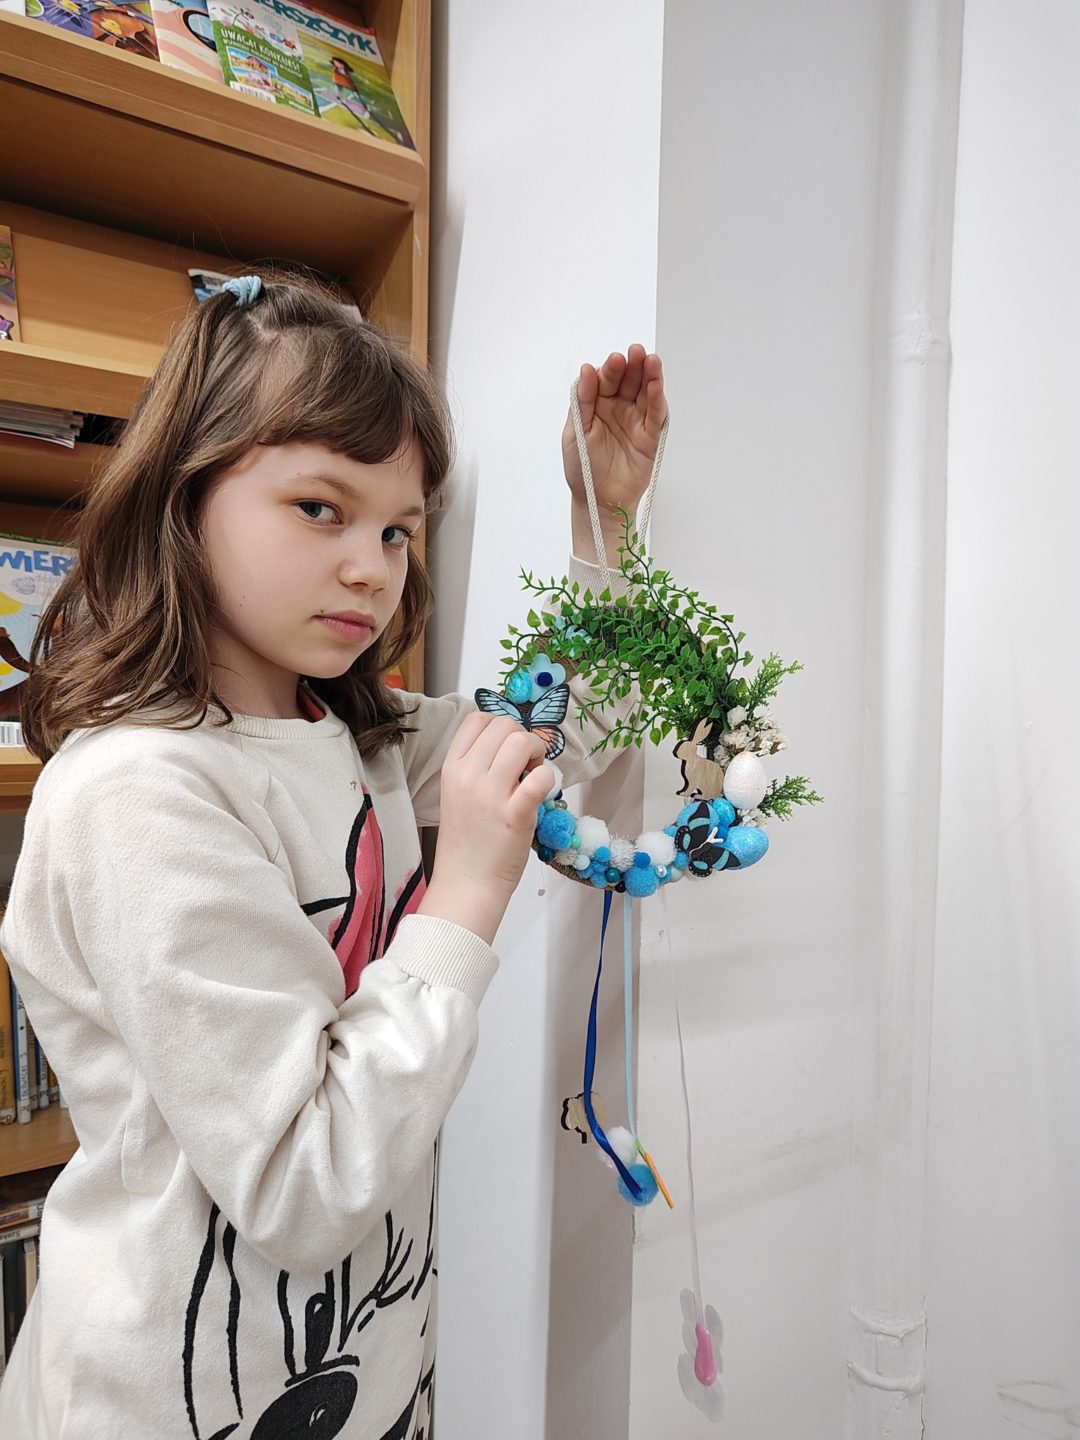 Dziewczynka prezentująca efekt swojej twórczej pracy. Ulubionym kolorem jest niebieski, który zdominował wielkanocną kompozycję uzupełnioną roślinnymi i drewnianymi elementami. Nie zabrakło też piórek i filcowych zająców.